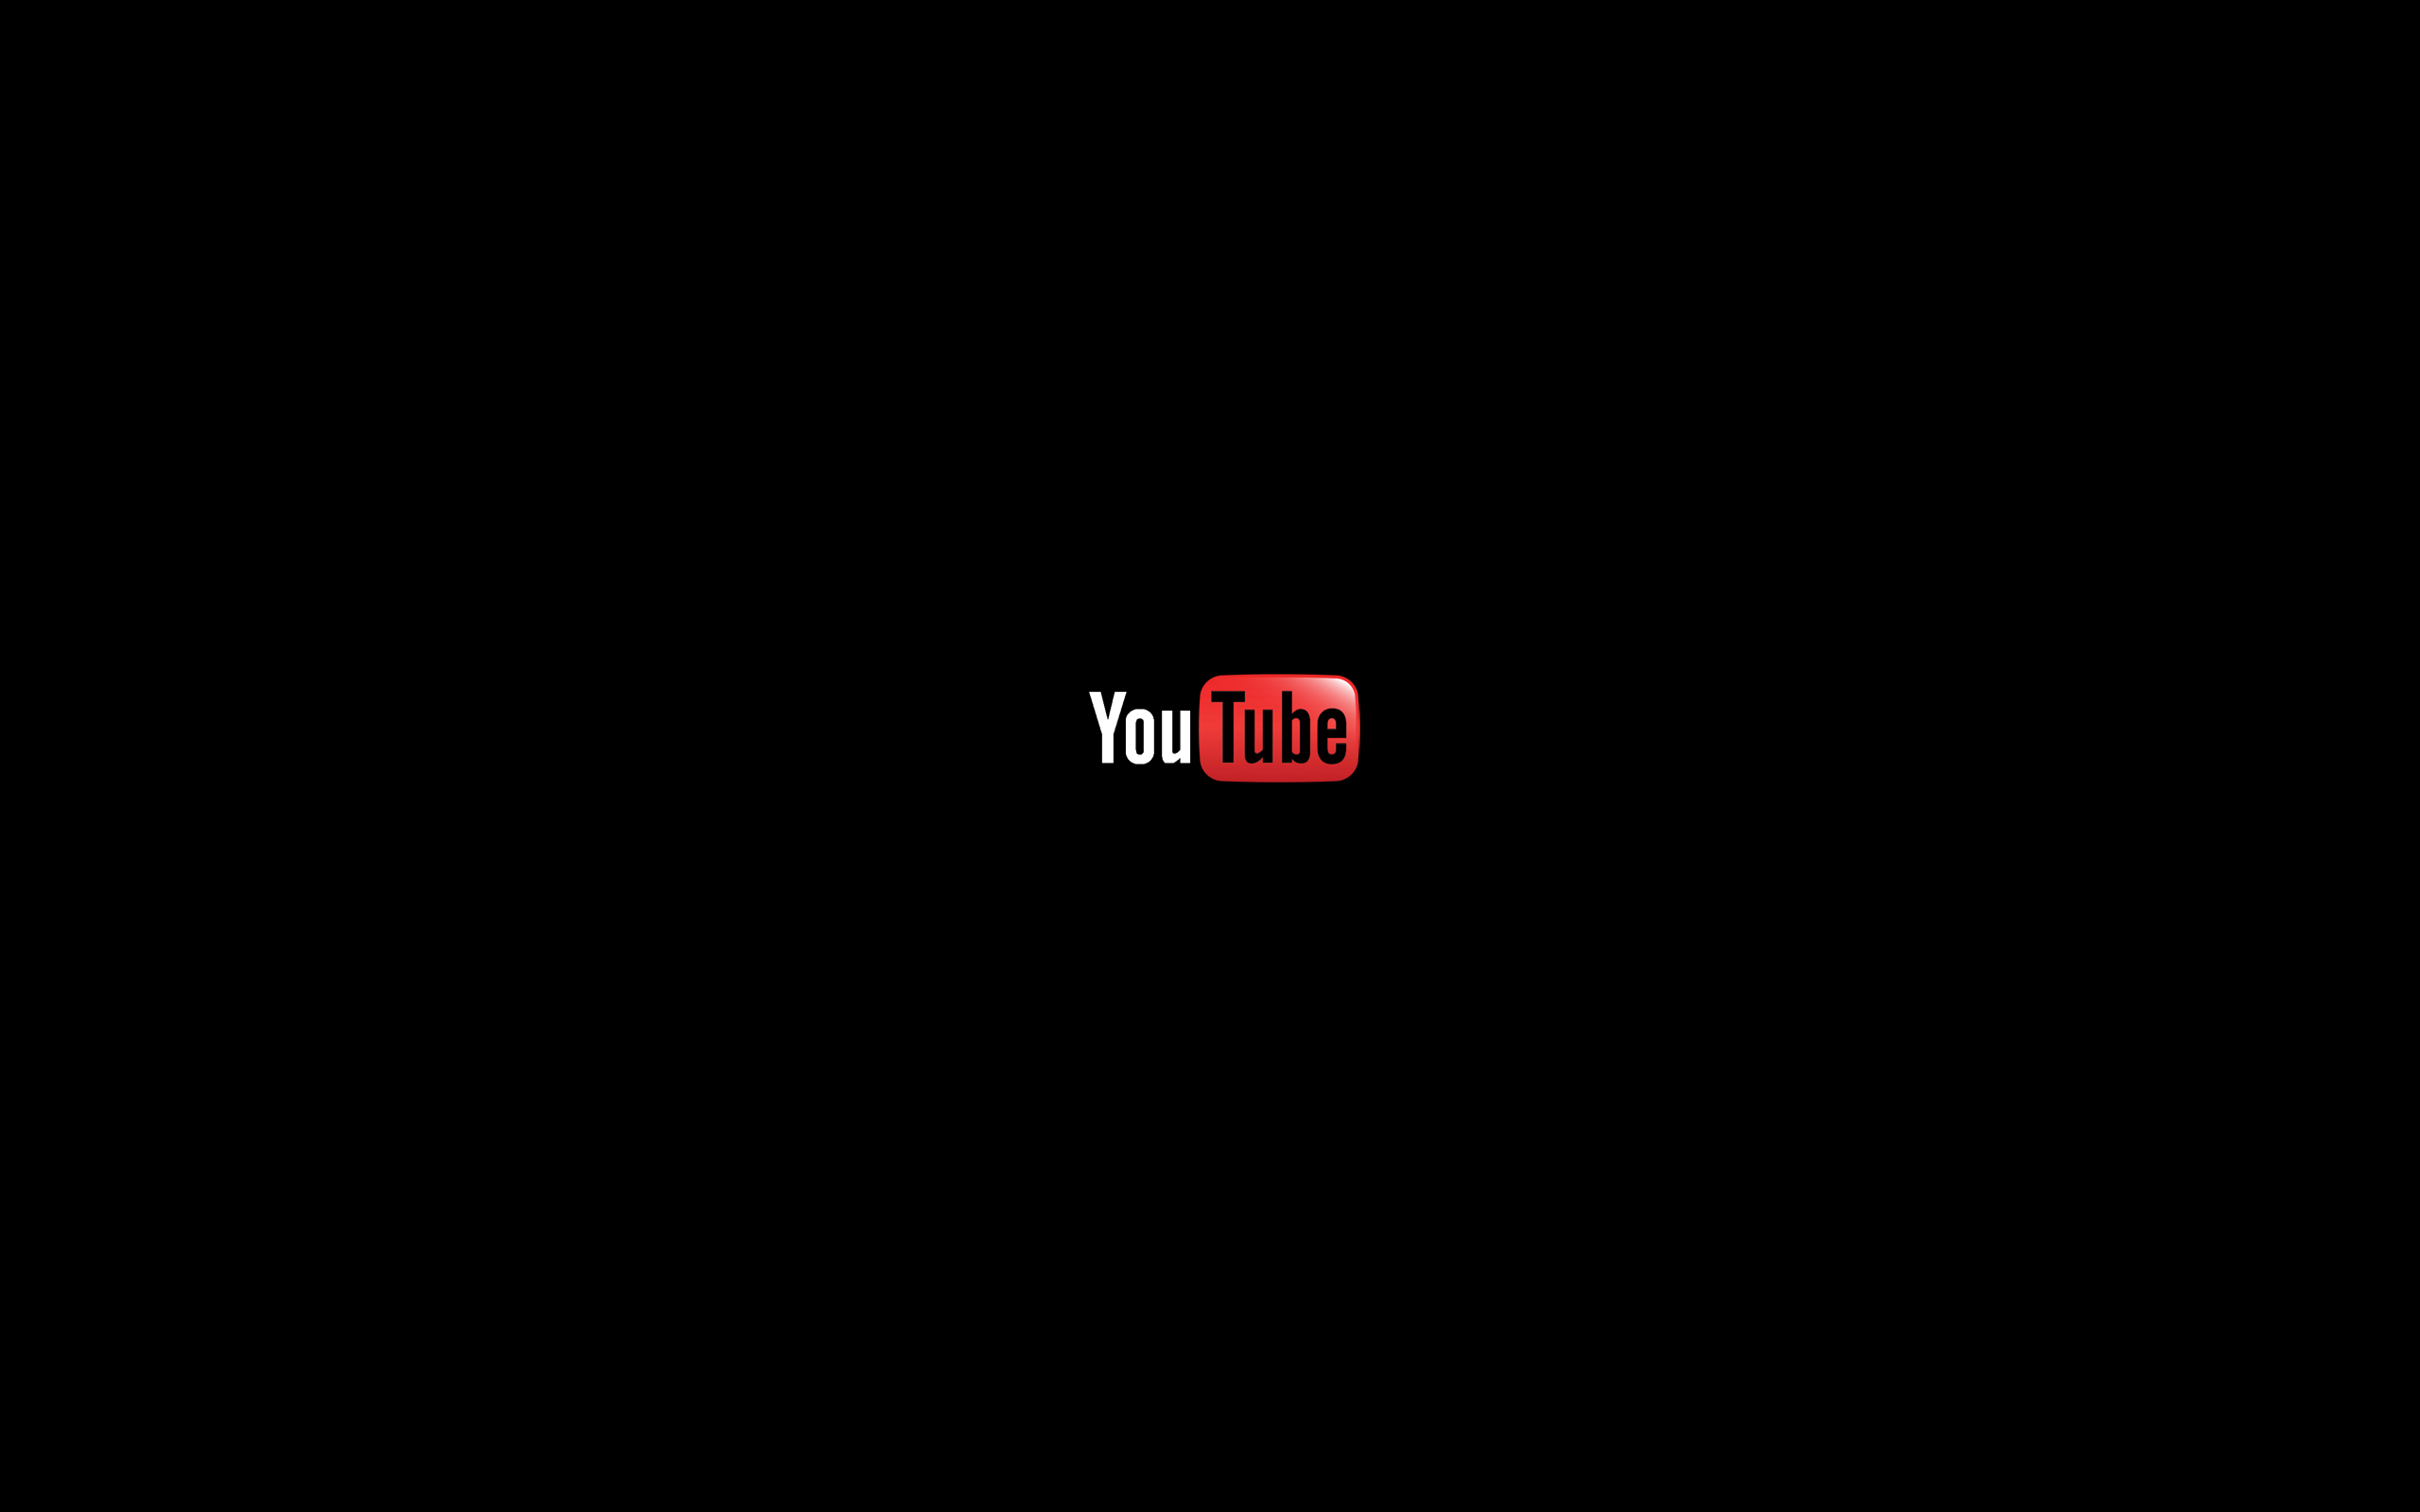 Ютуб ярлык на рабочем. Youtube на черном фоне. Черный фон для ютуба. Логотип ютуб на черном фоне. Обои для ютуба.